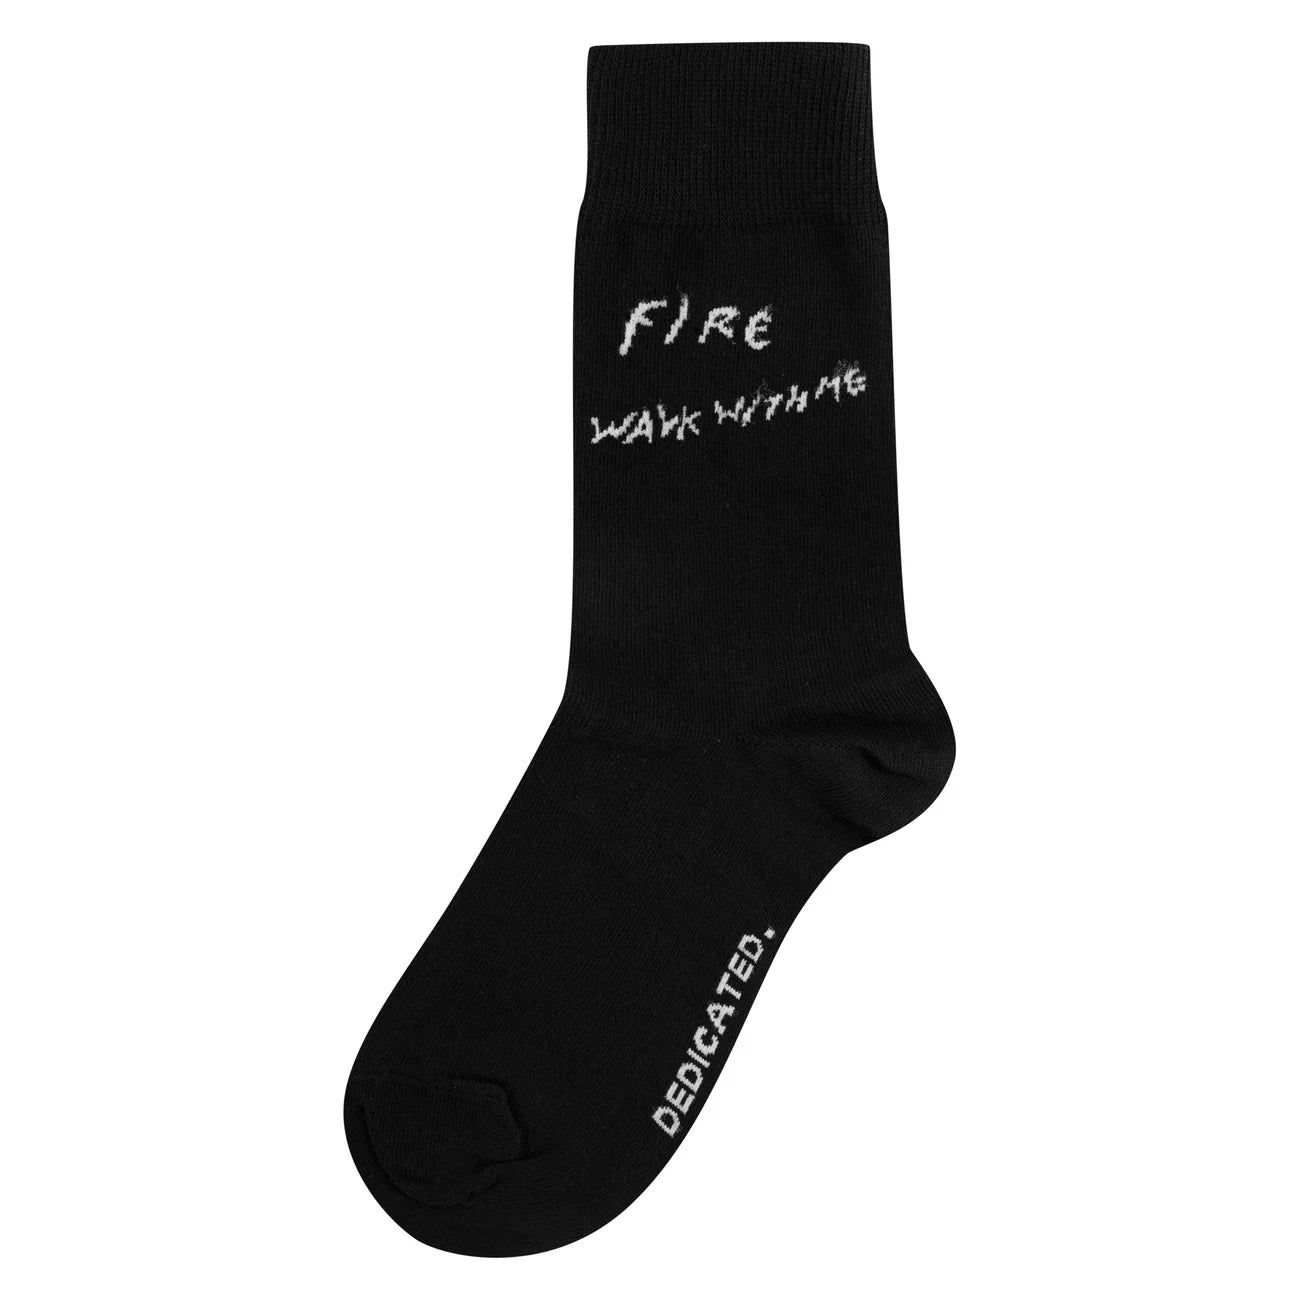 Socks Sigtuna Fire Walk - Black